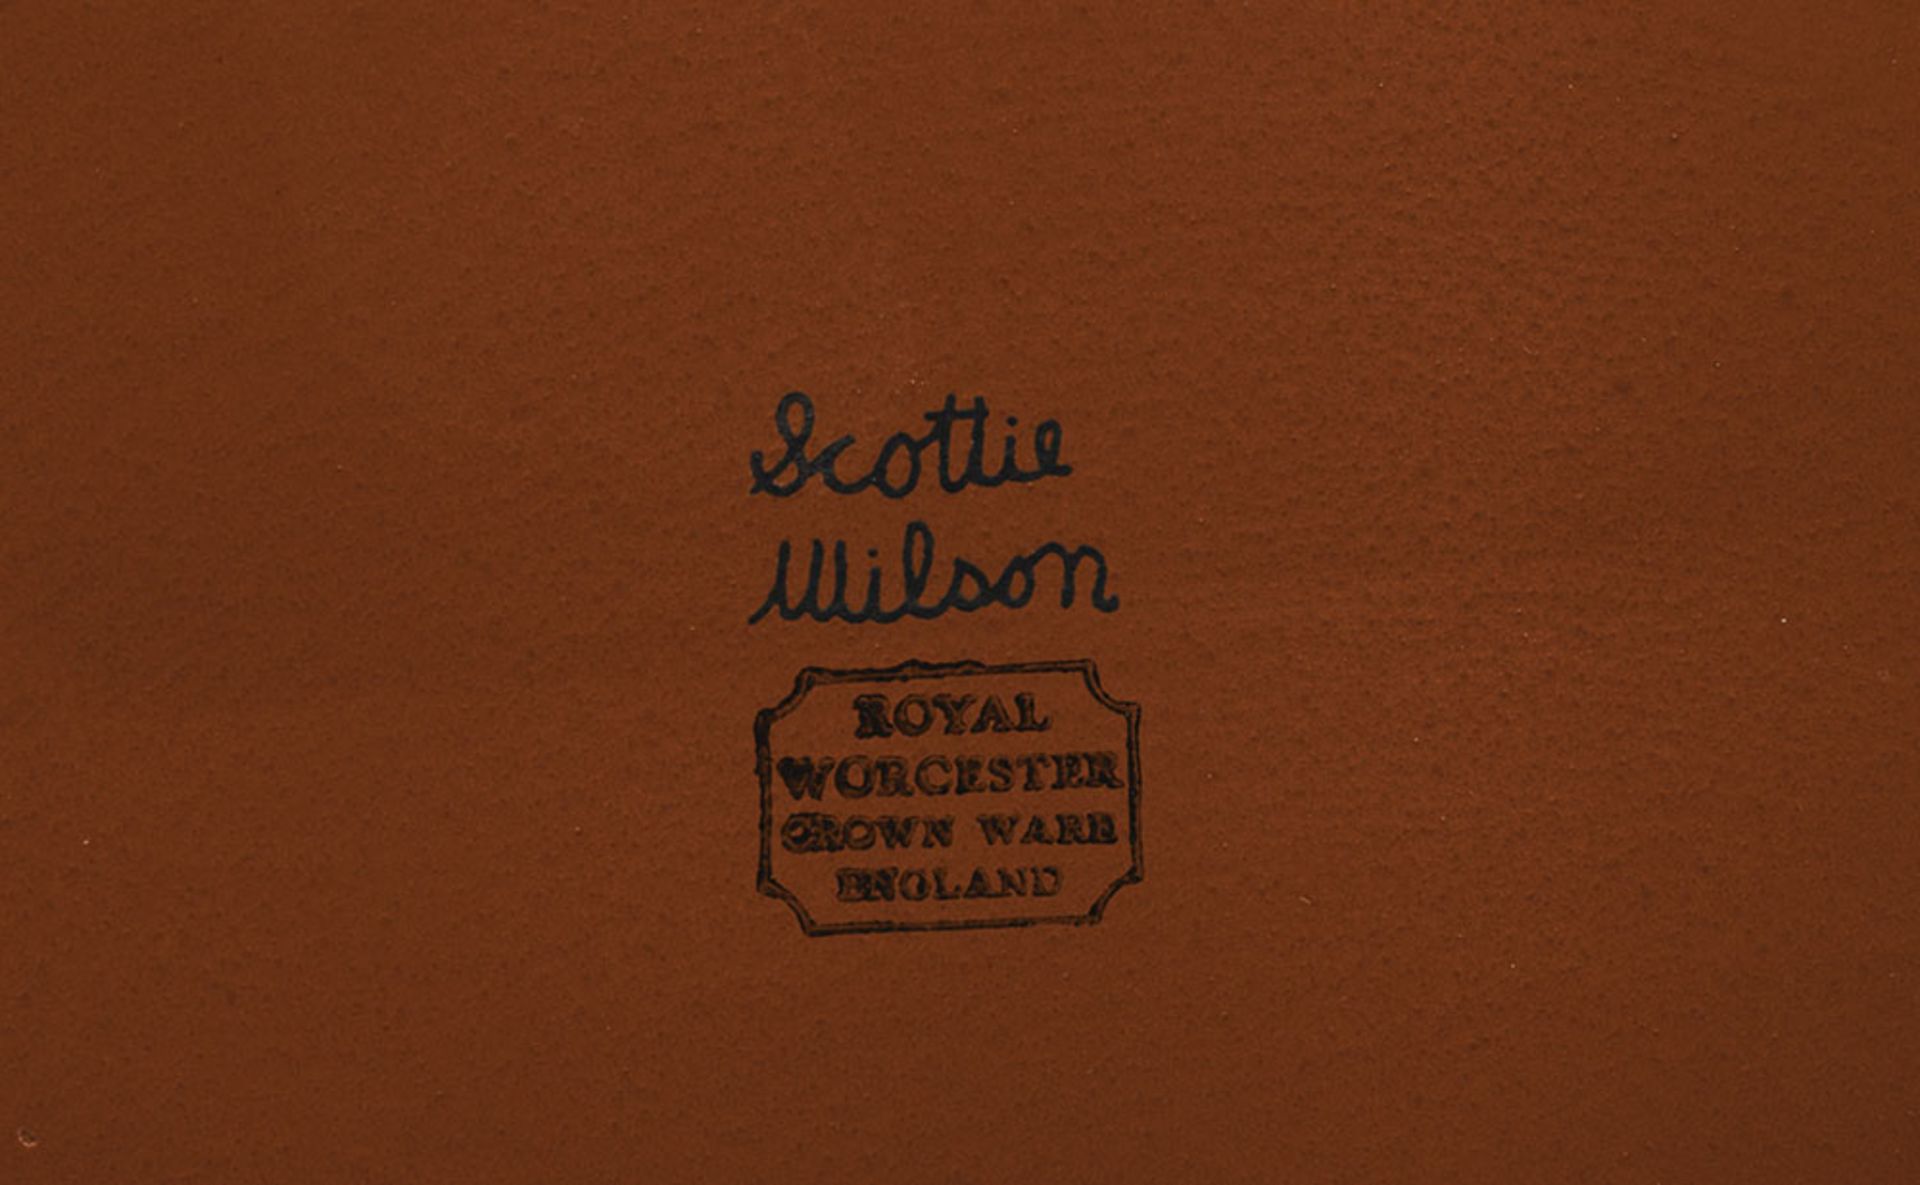 LARGE VINTAGE ROYAL WORCESTER PLATTER DESIGNED BY SCOTTIE WILSON c.1960 - Image 4 of 7